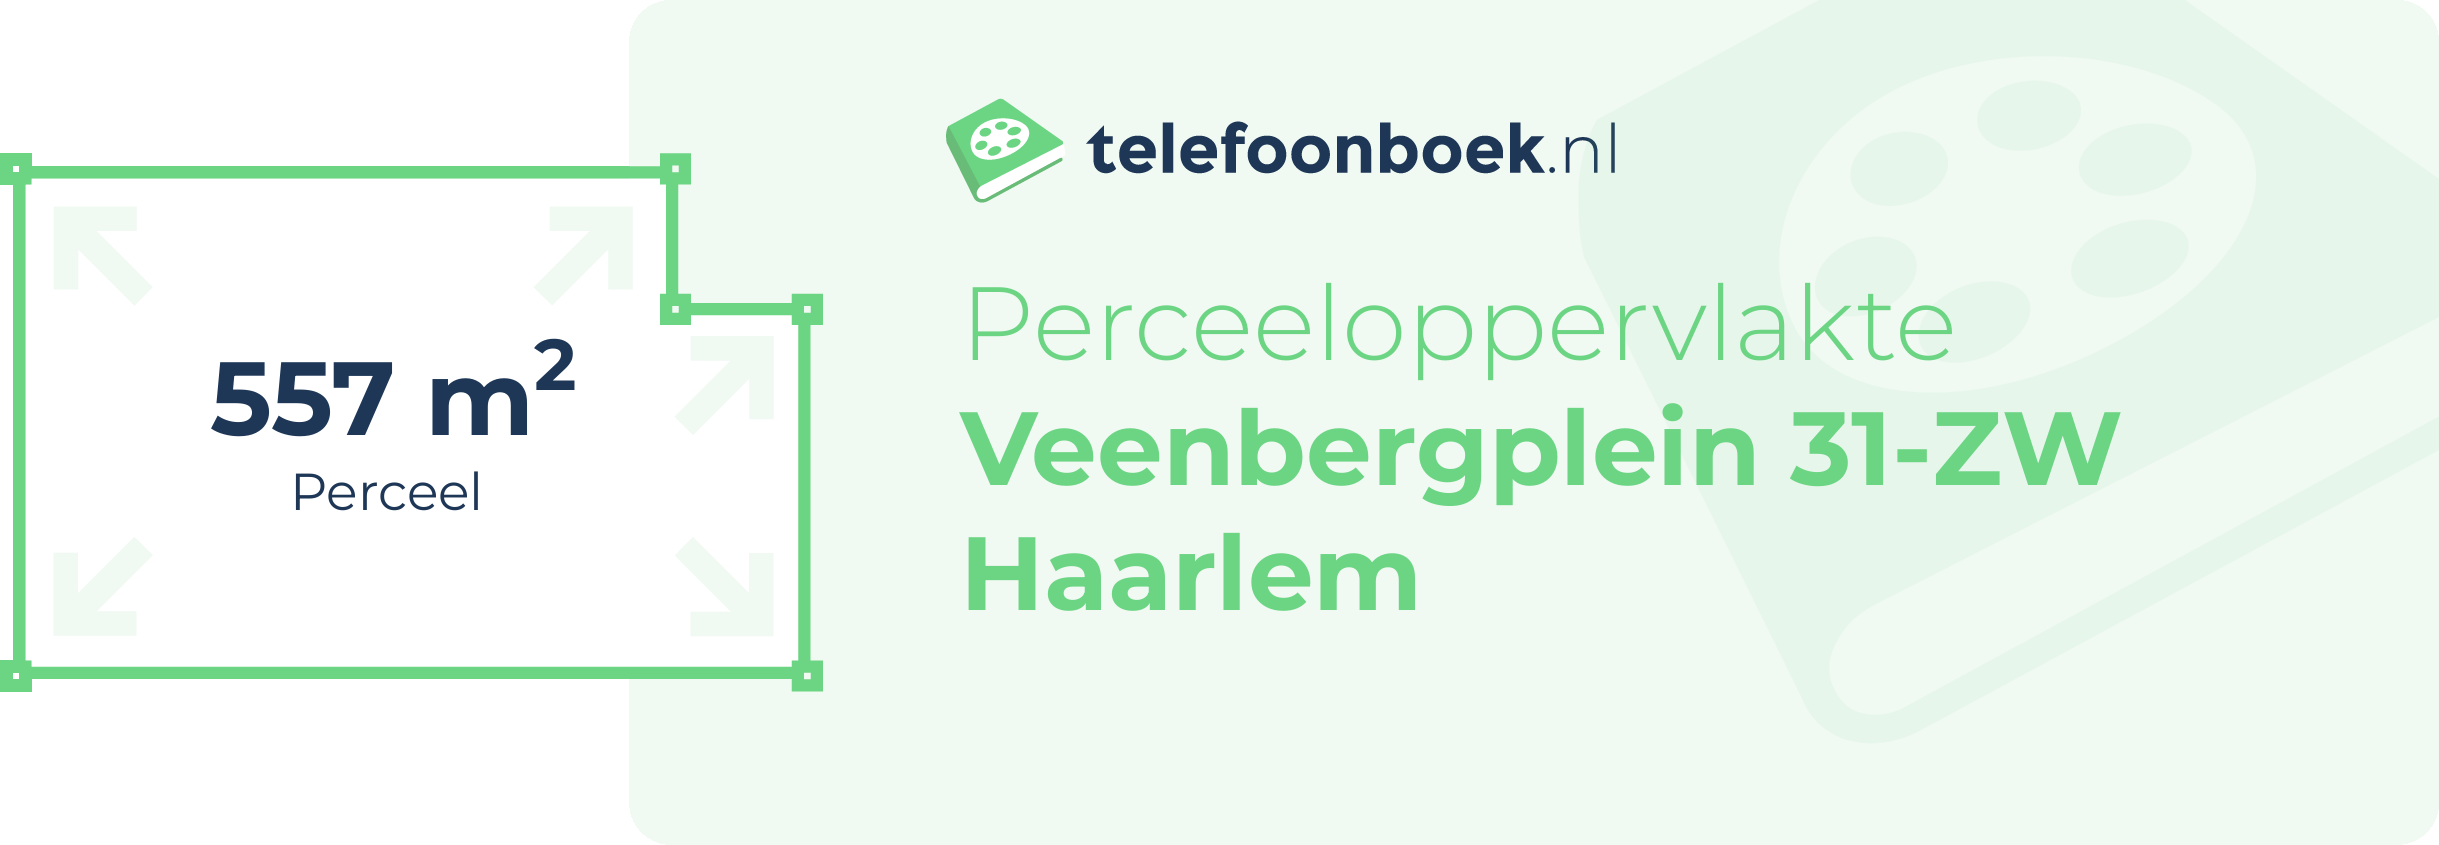 Perceeloppervlakte Veenbergplein 31-ZW Haarlem